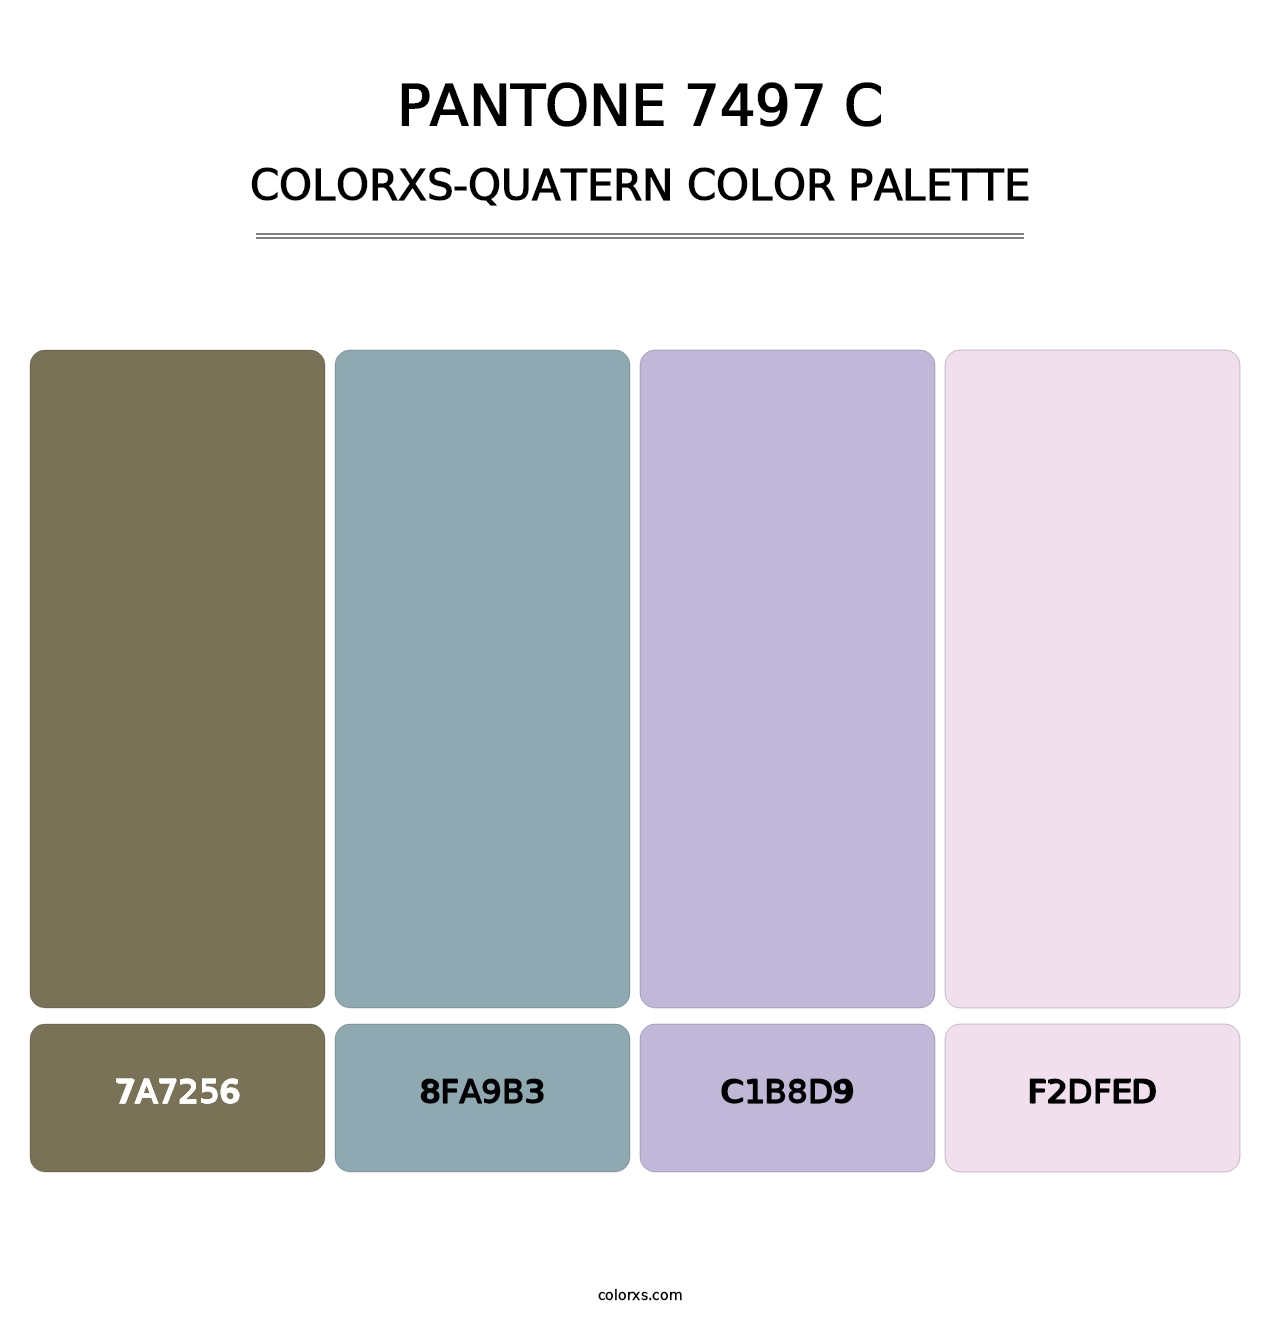 PANTONE 7497 C - Colorxs Quatern Palette